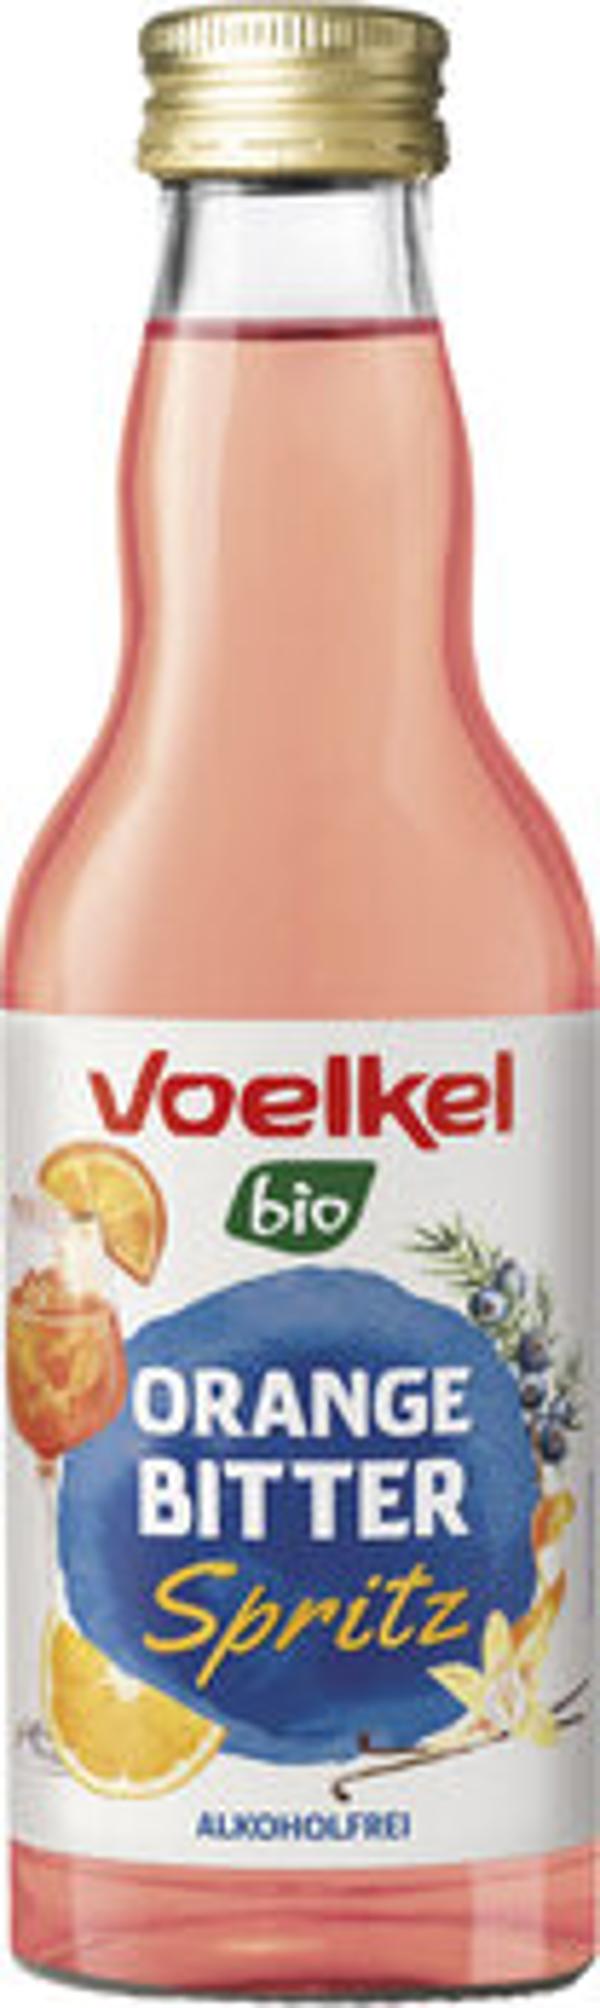 Produktfoto zu Cocktail Orange Bitter Spritz 0,2l Voelkel